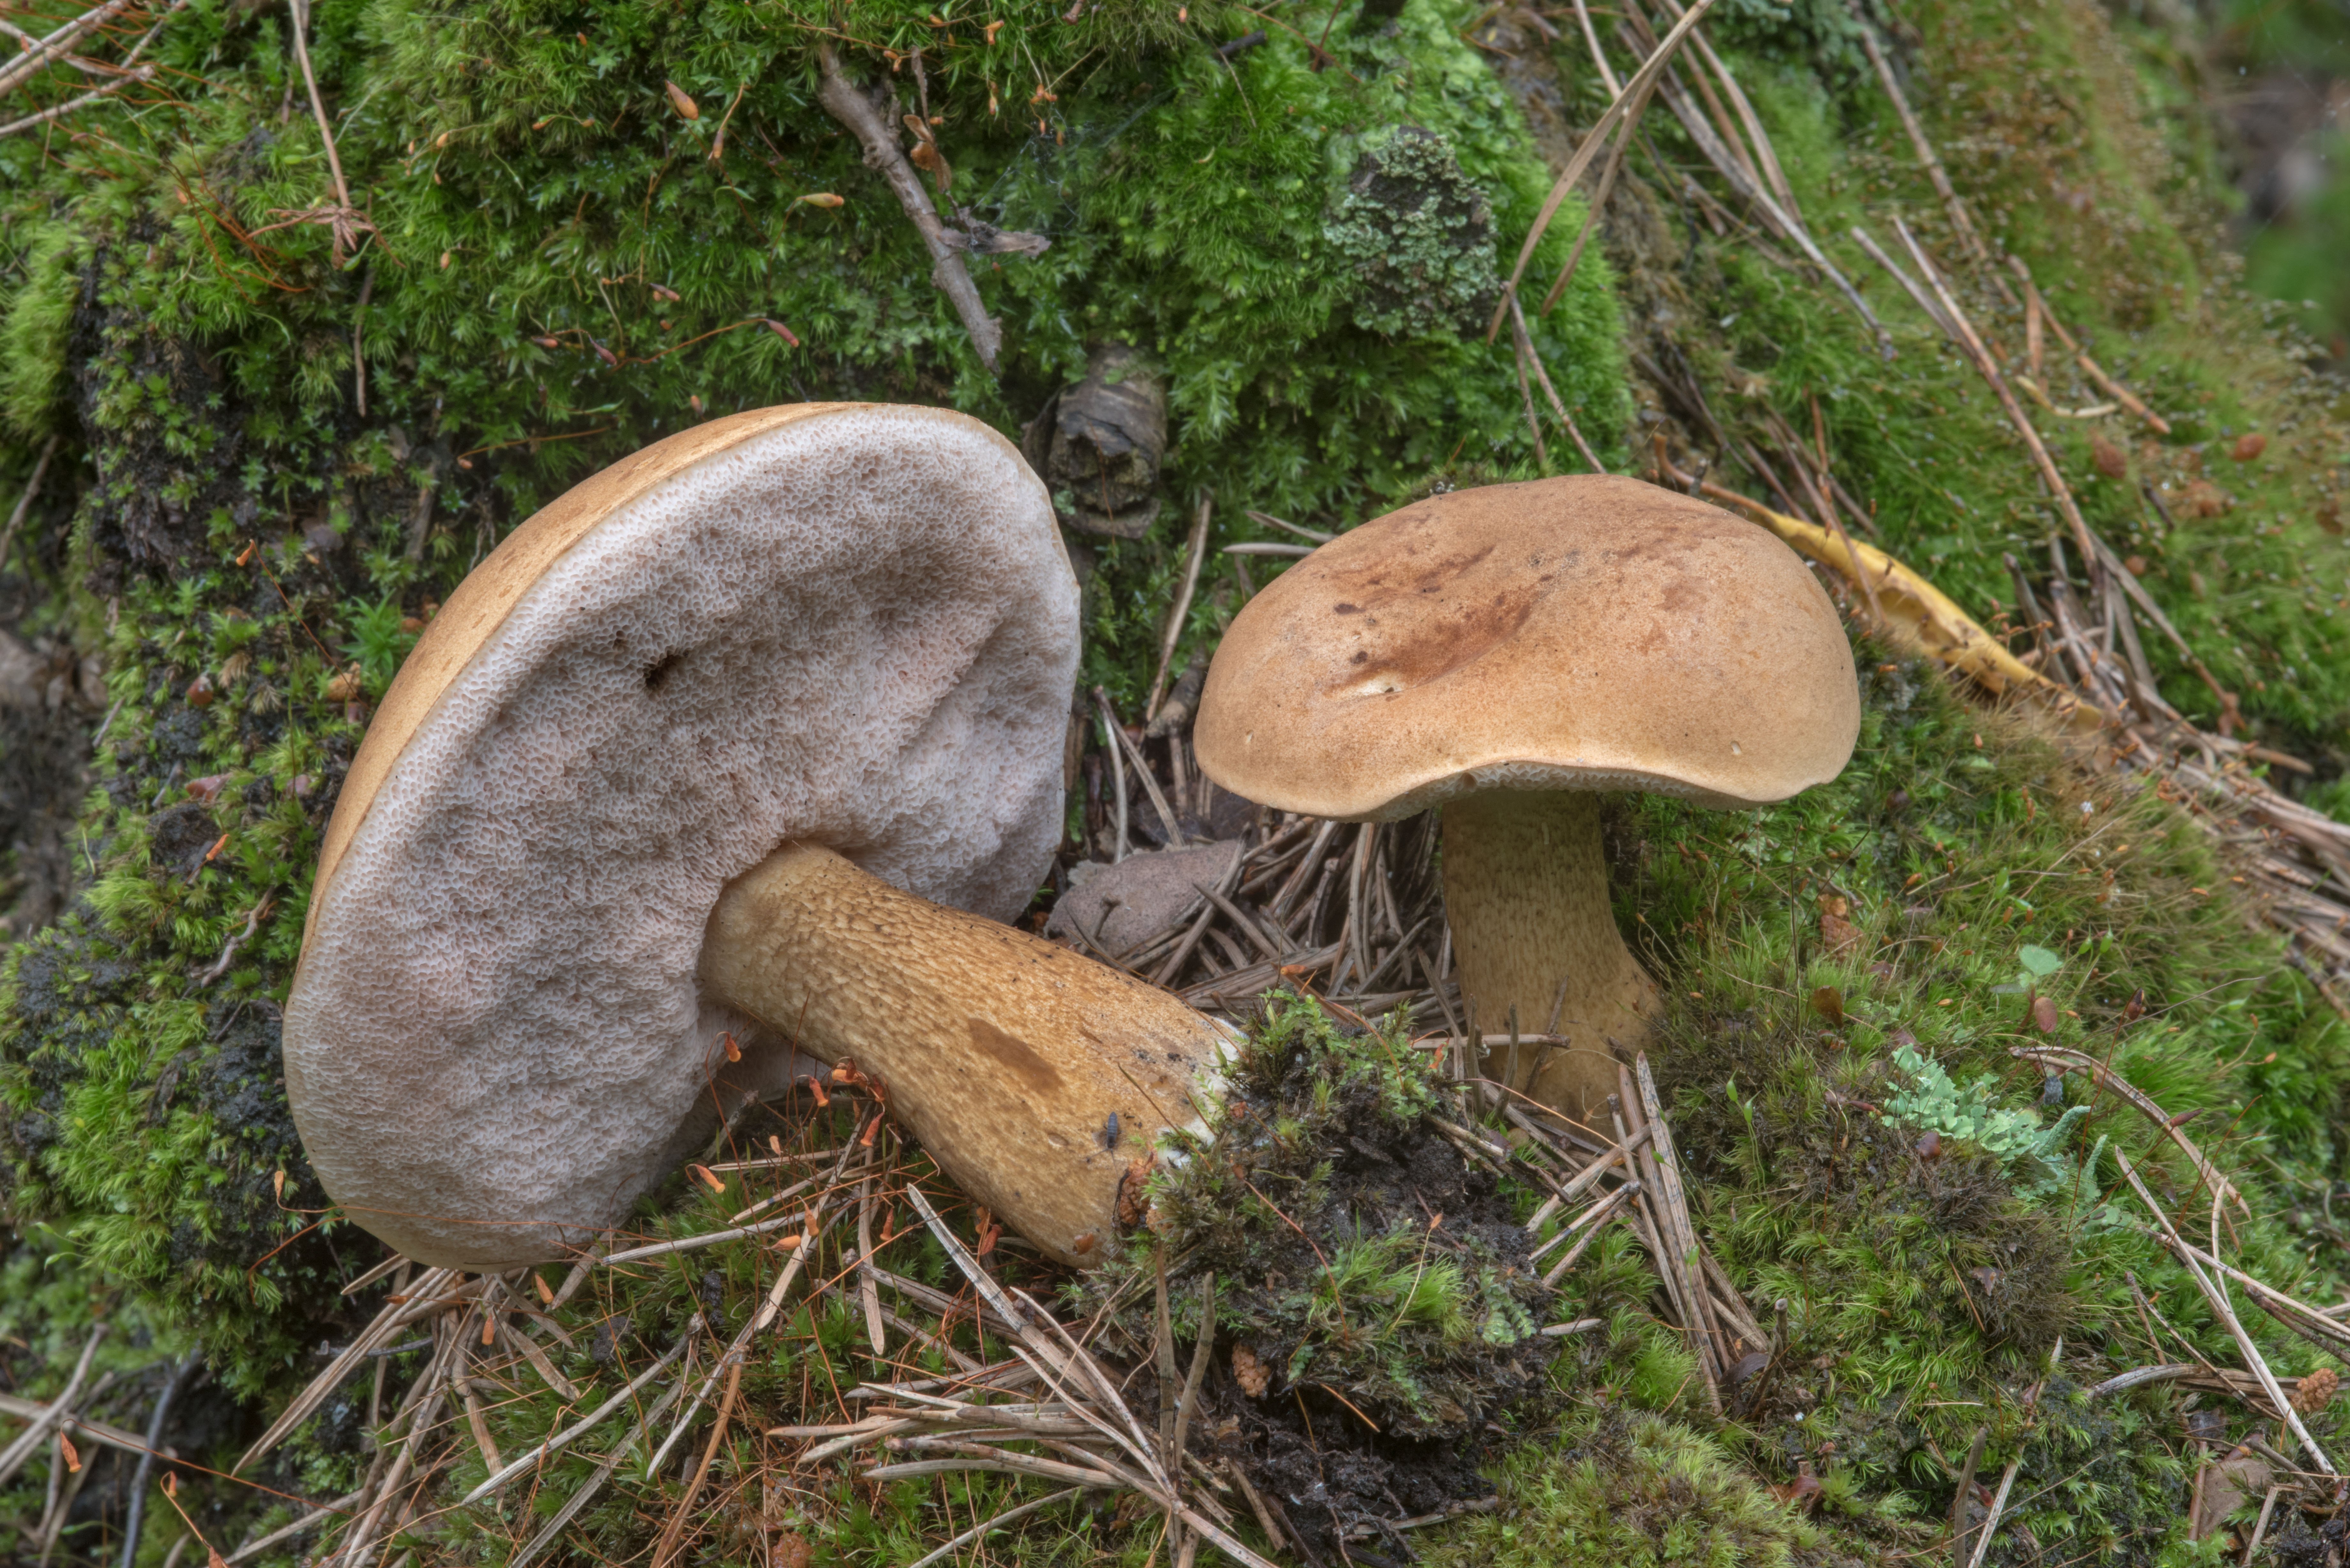 Есть гриб желчный. Желчный гриб горчак. Tylopilus felleus – желчный гриб. Горчак, ложный белый гриб. Ложный Боровик, желчный гриб.